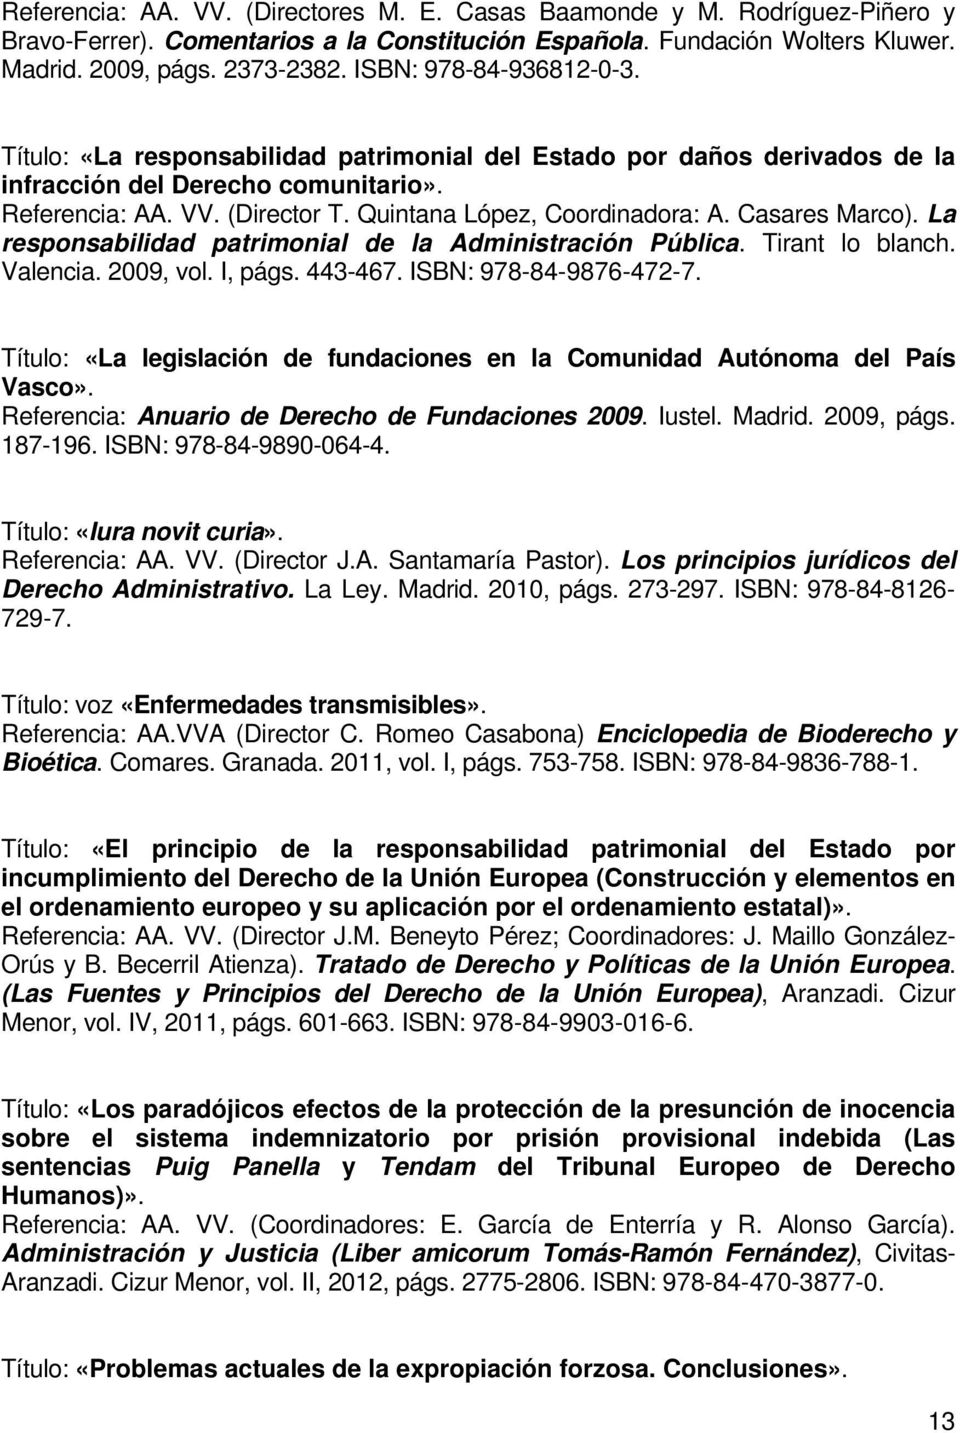 Quintana López, Coordinadora: A. Casares Marco). La responsabilidad patrimonial de la Administración Pública. Tirant lo blanch. Valencia. 2009, vol. I, págs. 443-467. ISBN: 978-84-9876-472-7.